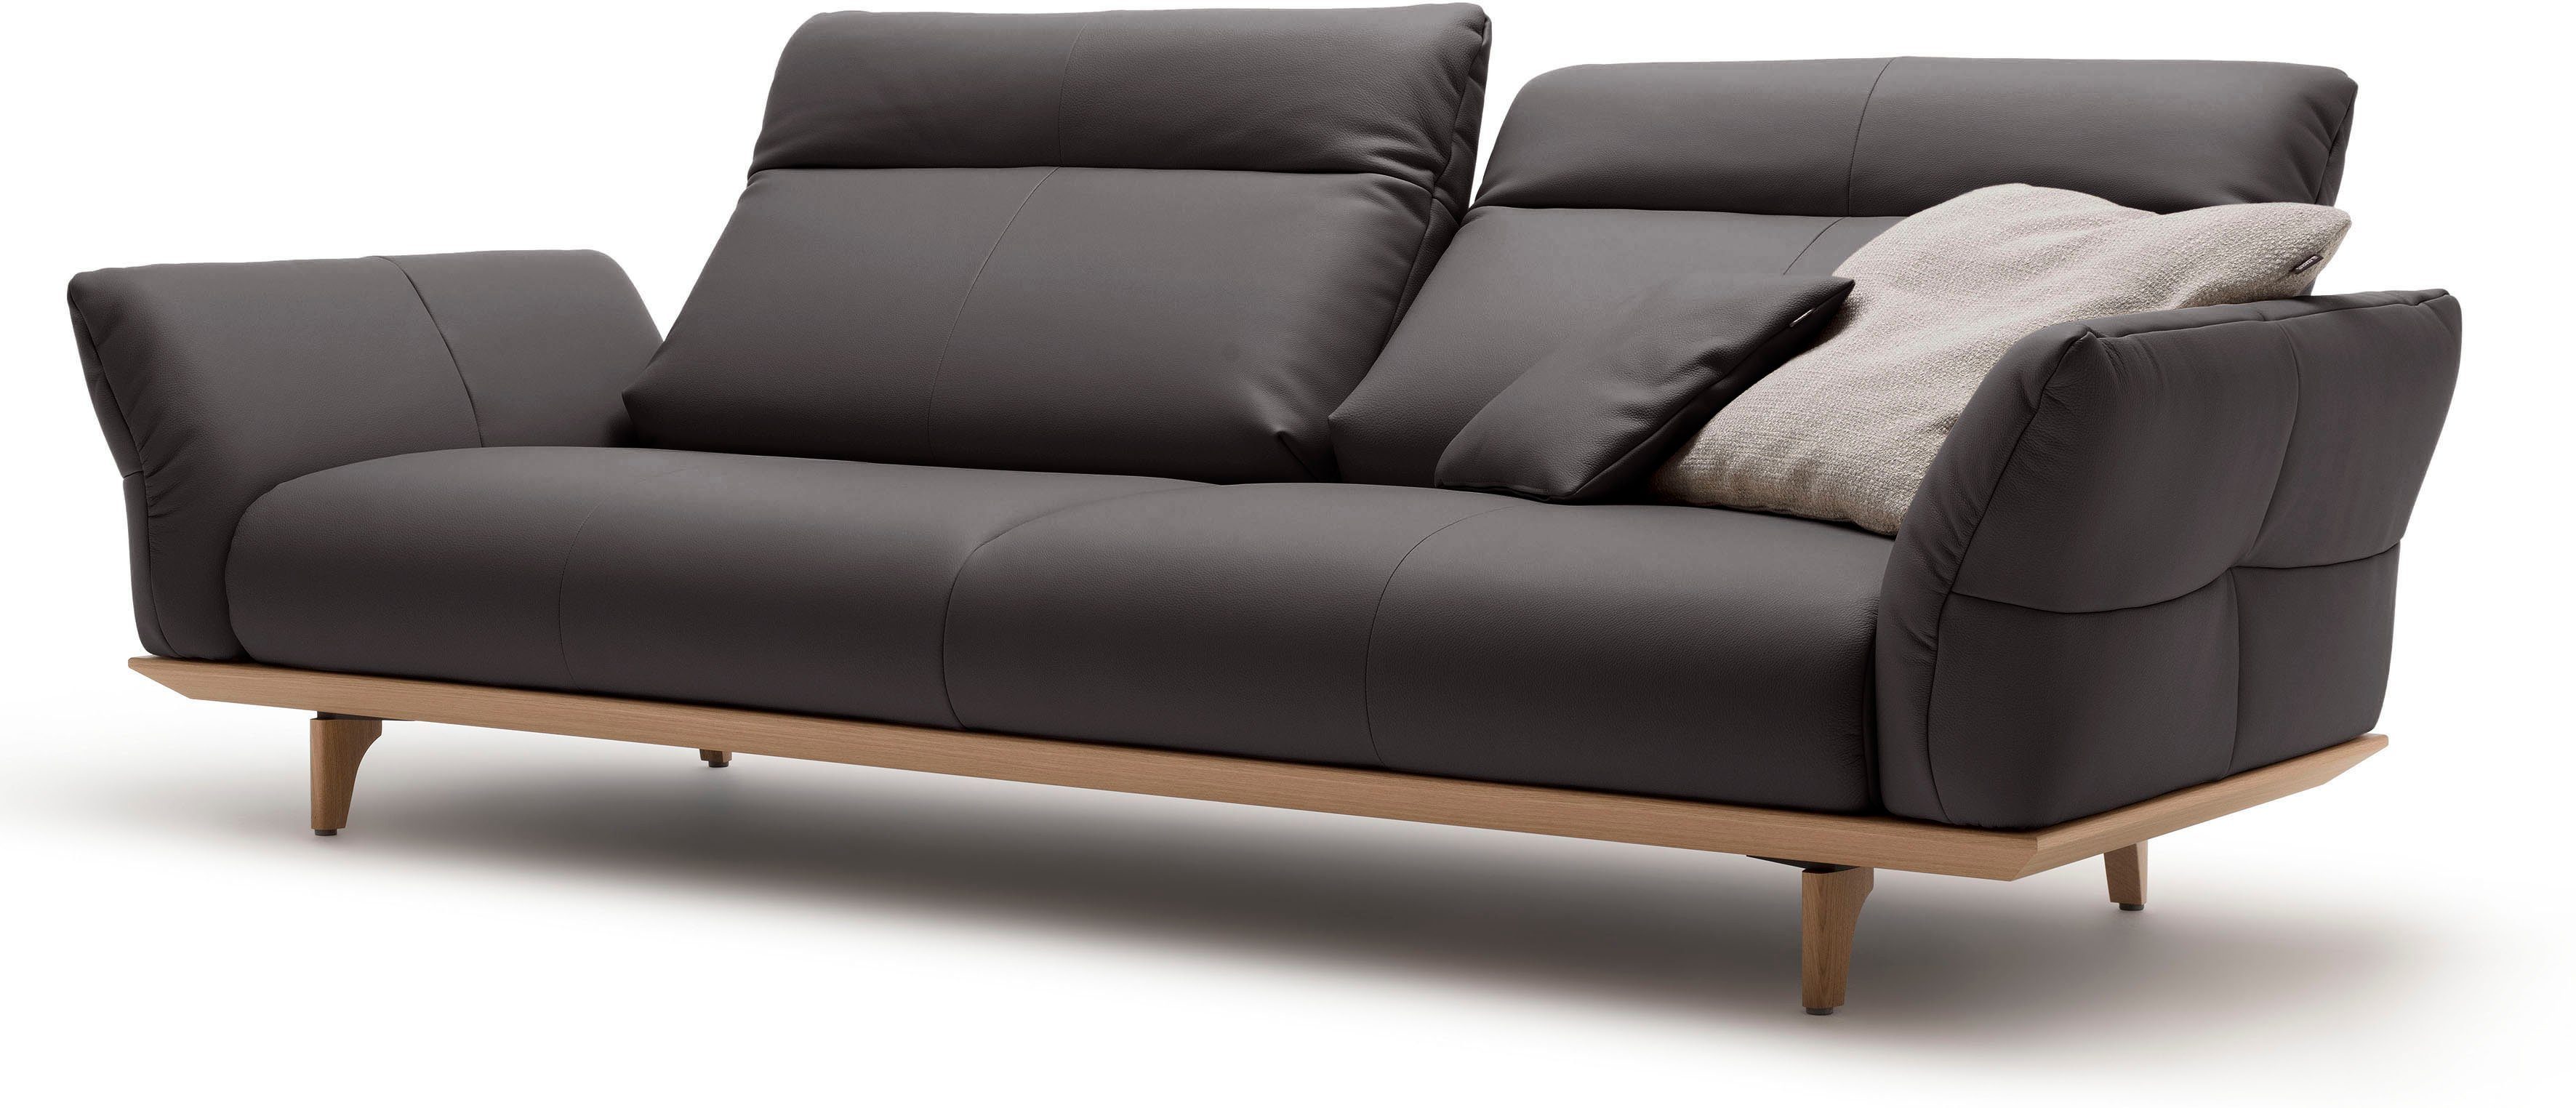 Eiche, cm 3,5-Sitzer hülsta Eiche Breite Sockel in sofa natur, Füße hs.460, 228